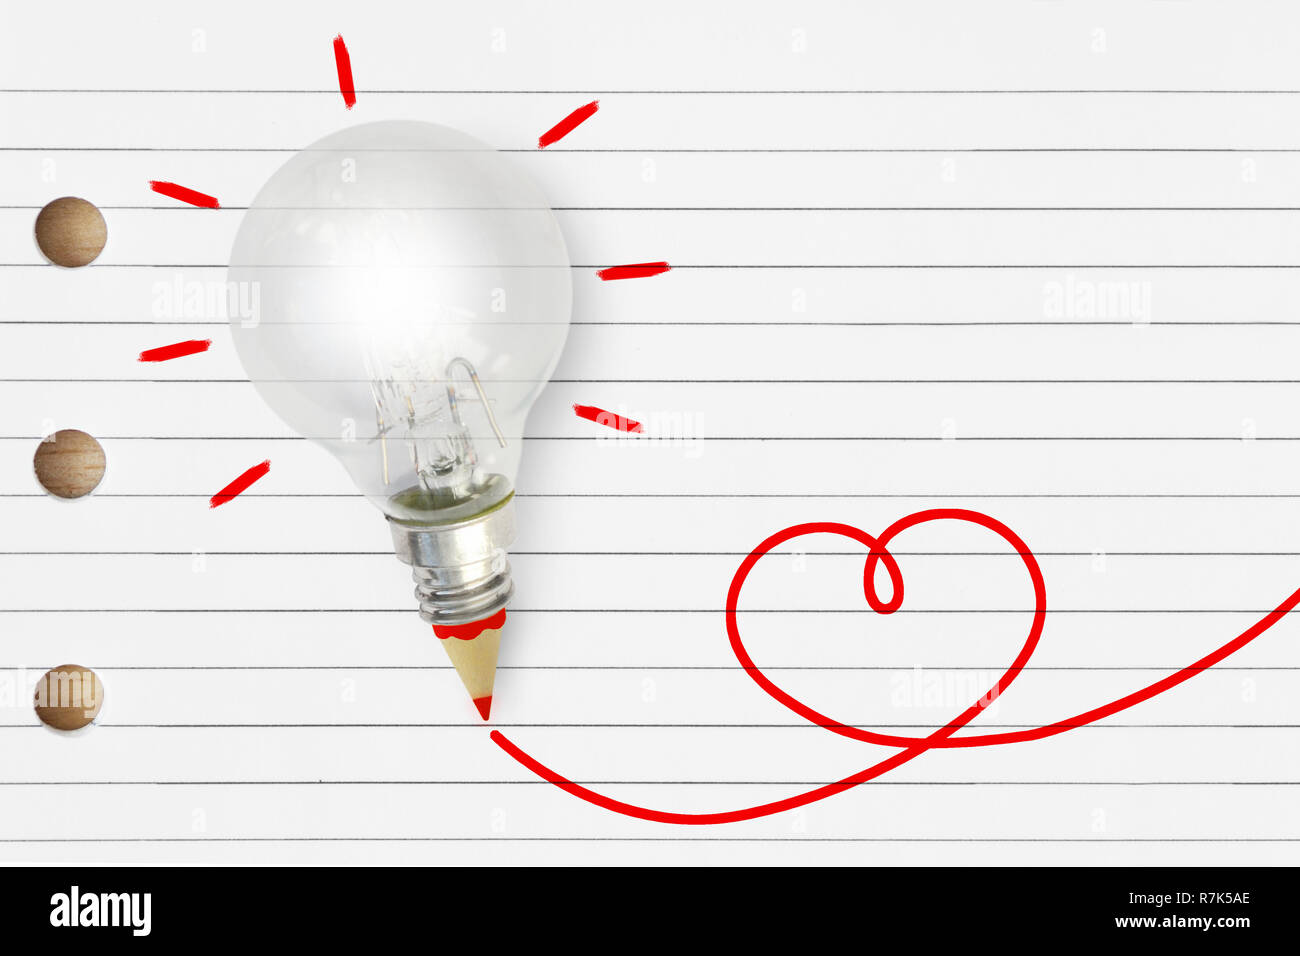 Lampe mit roten Herzen und Bleistift Skizze auf dem gestreiften Notebook - Liebe und Kreativität Konzept Stockfoto